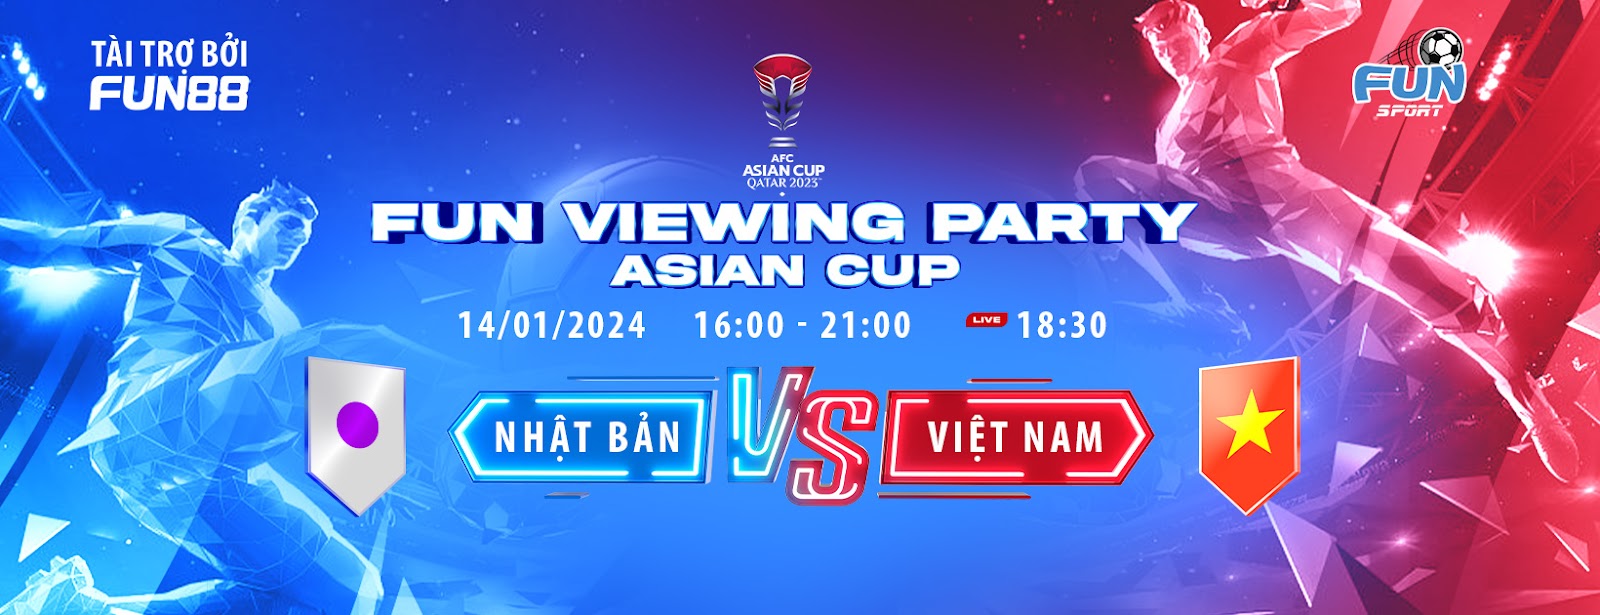 Cùng Fun Viewing Party soi kèo Asian Cup 2023 - Nhật Bản vs Việt Nam